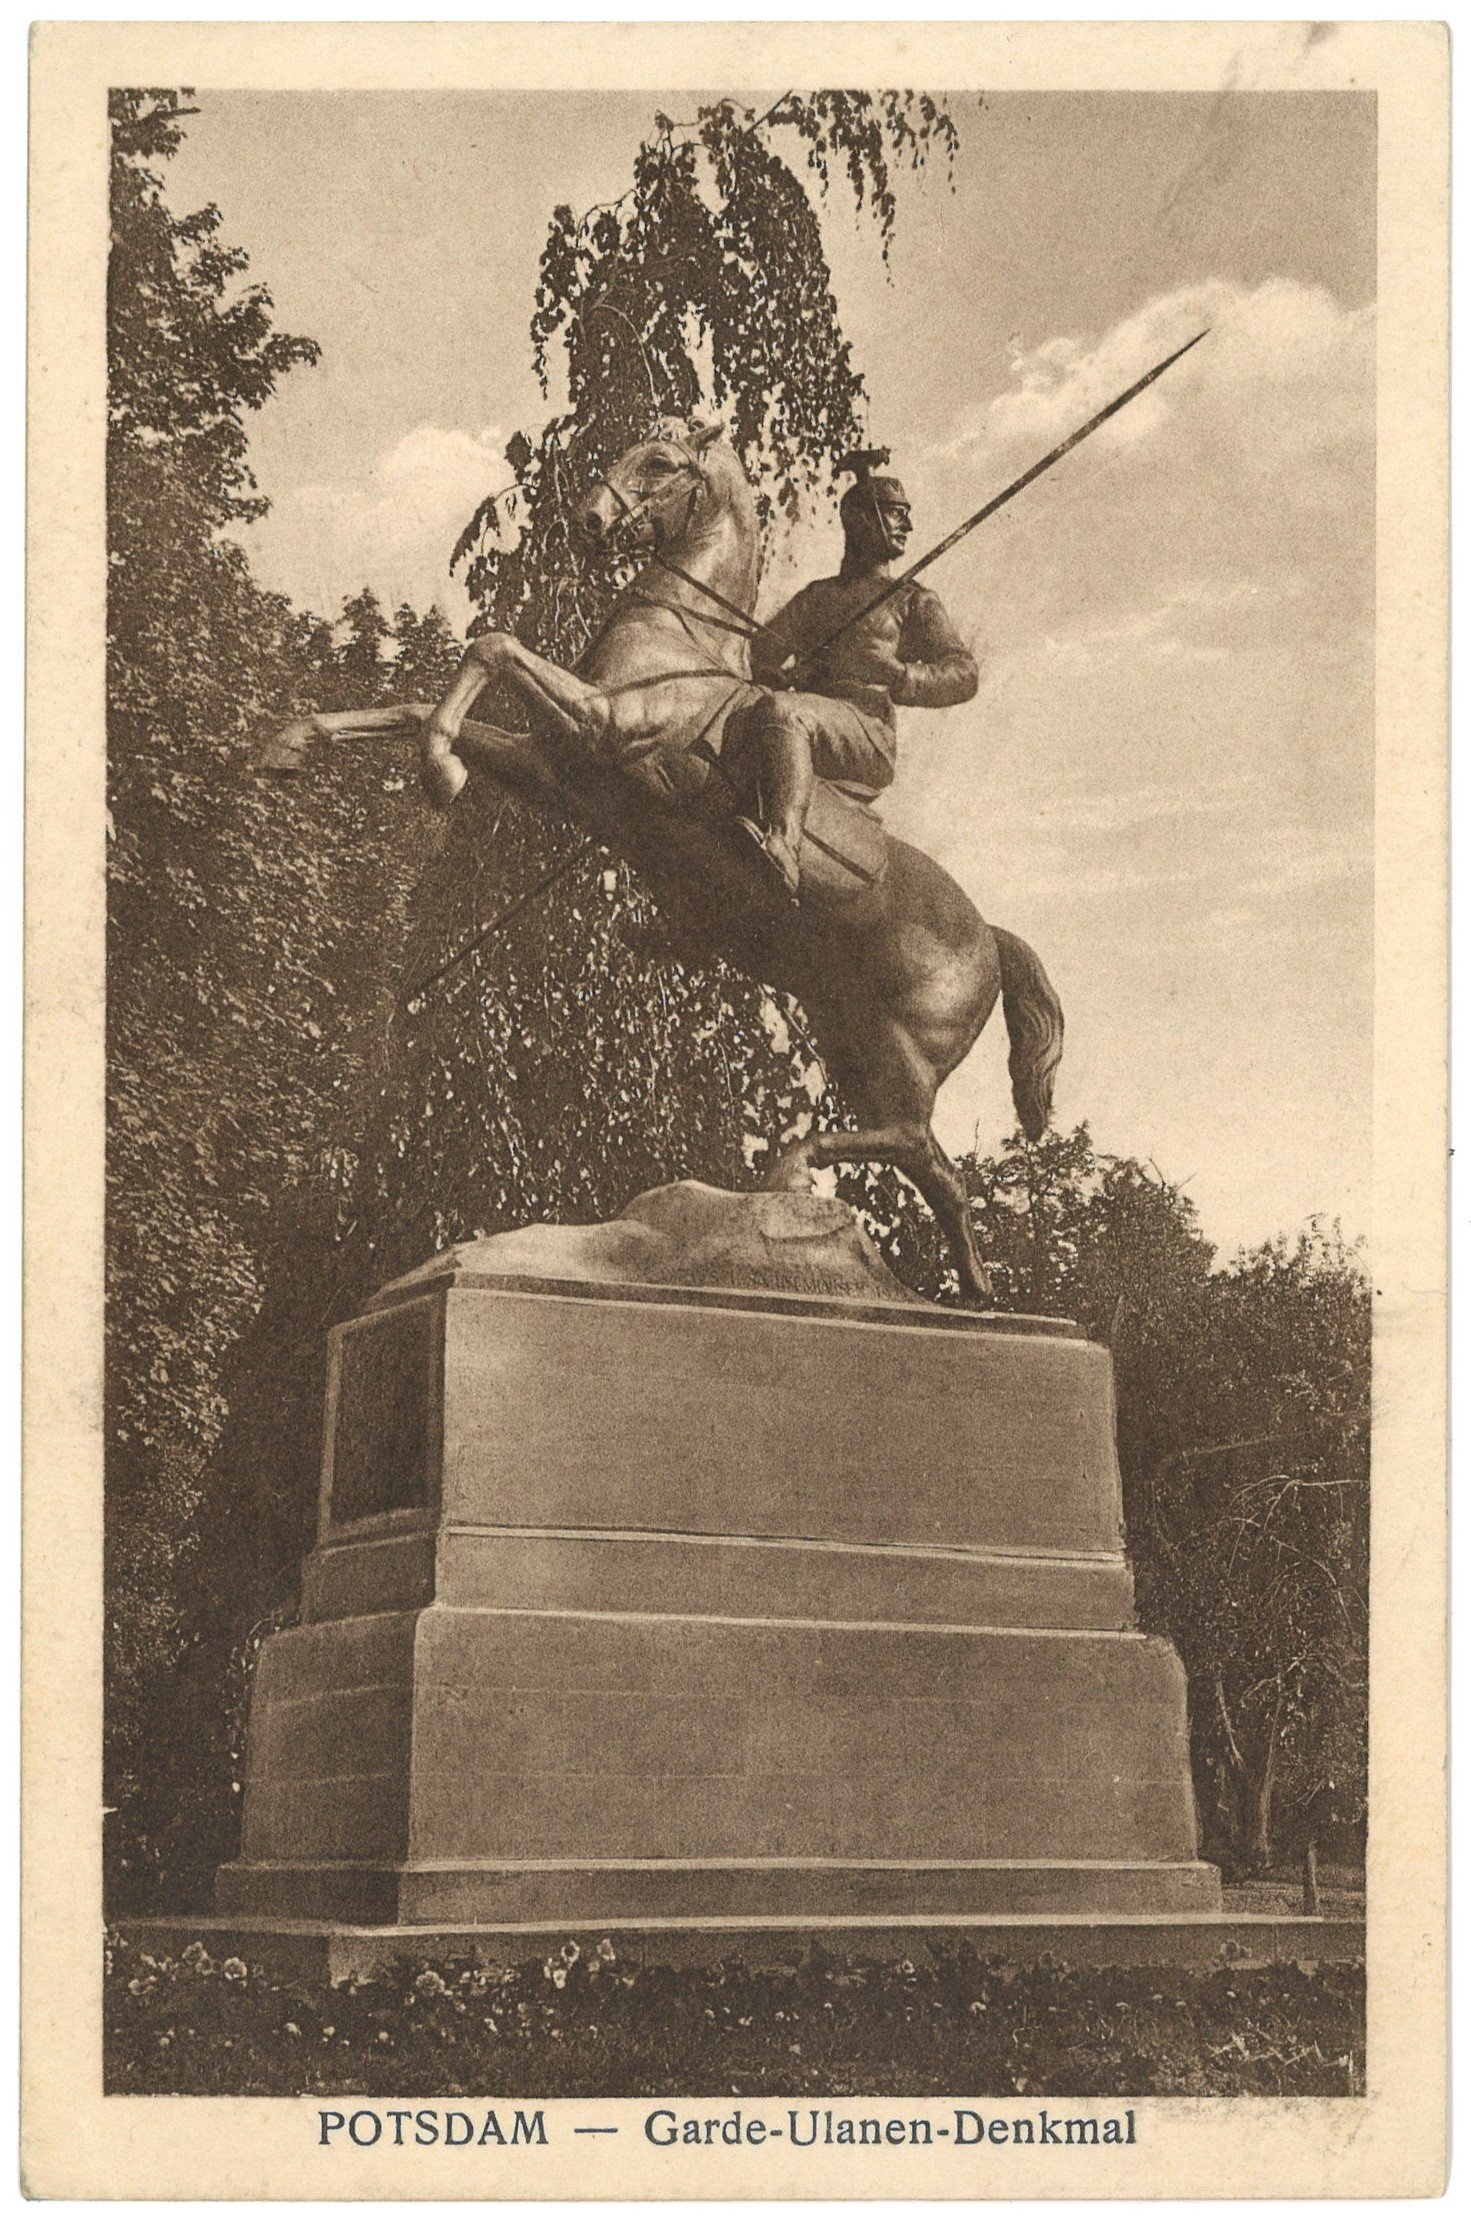 Potsdam: Denkmal des 3. Garde-Ulanen-Regiments (Landesgeschichtliche Vereinigung für die Mark Brandenburg e.V. CC BY)